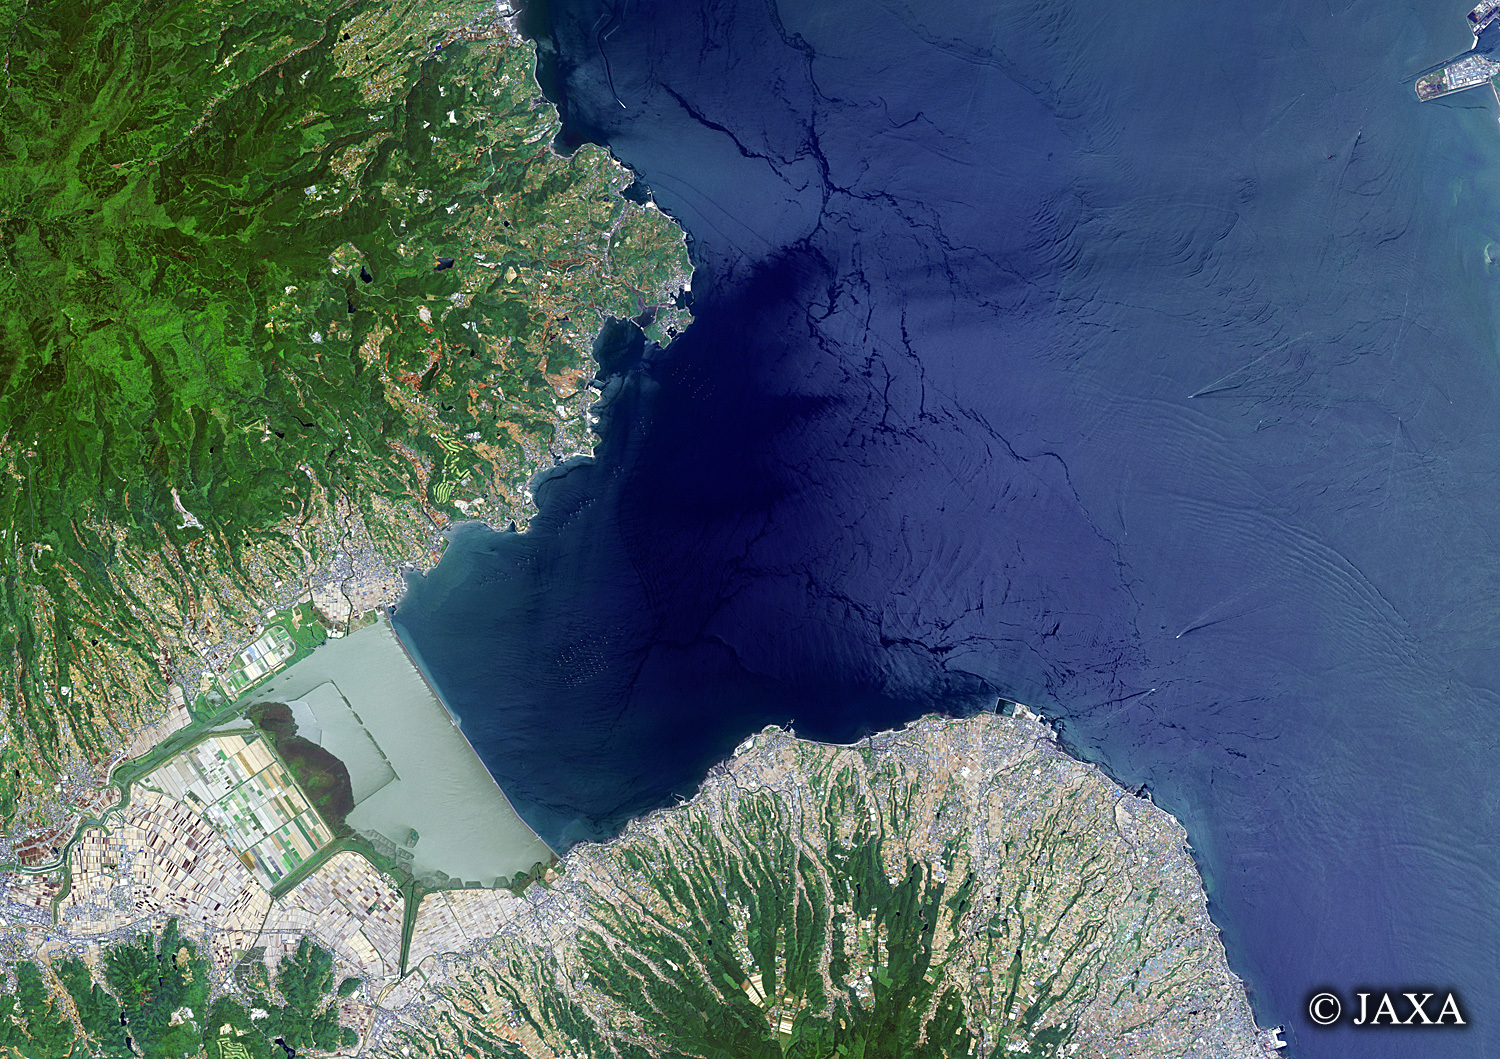 だいちから見た日本の都市 諫早湾:衛星画像